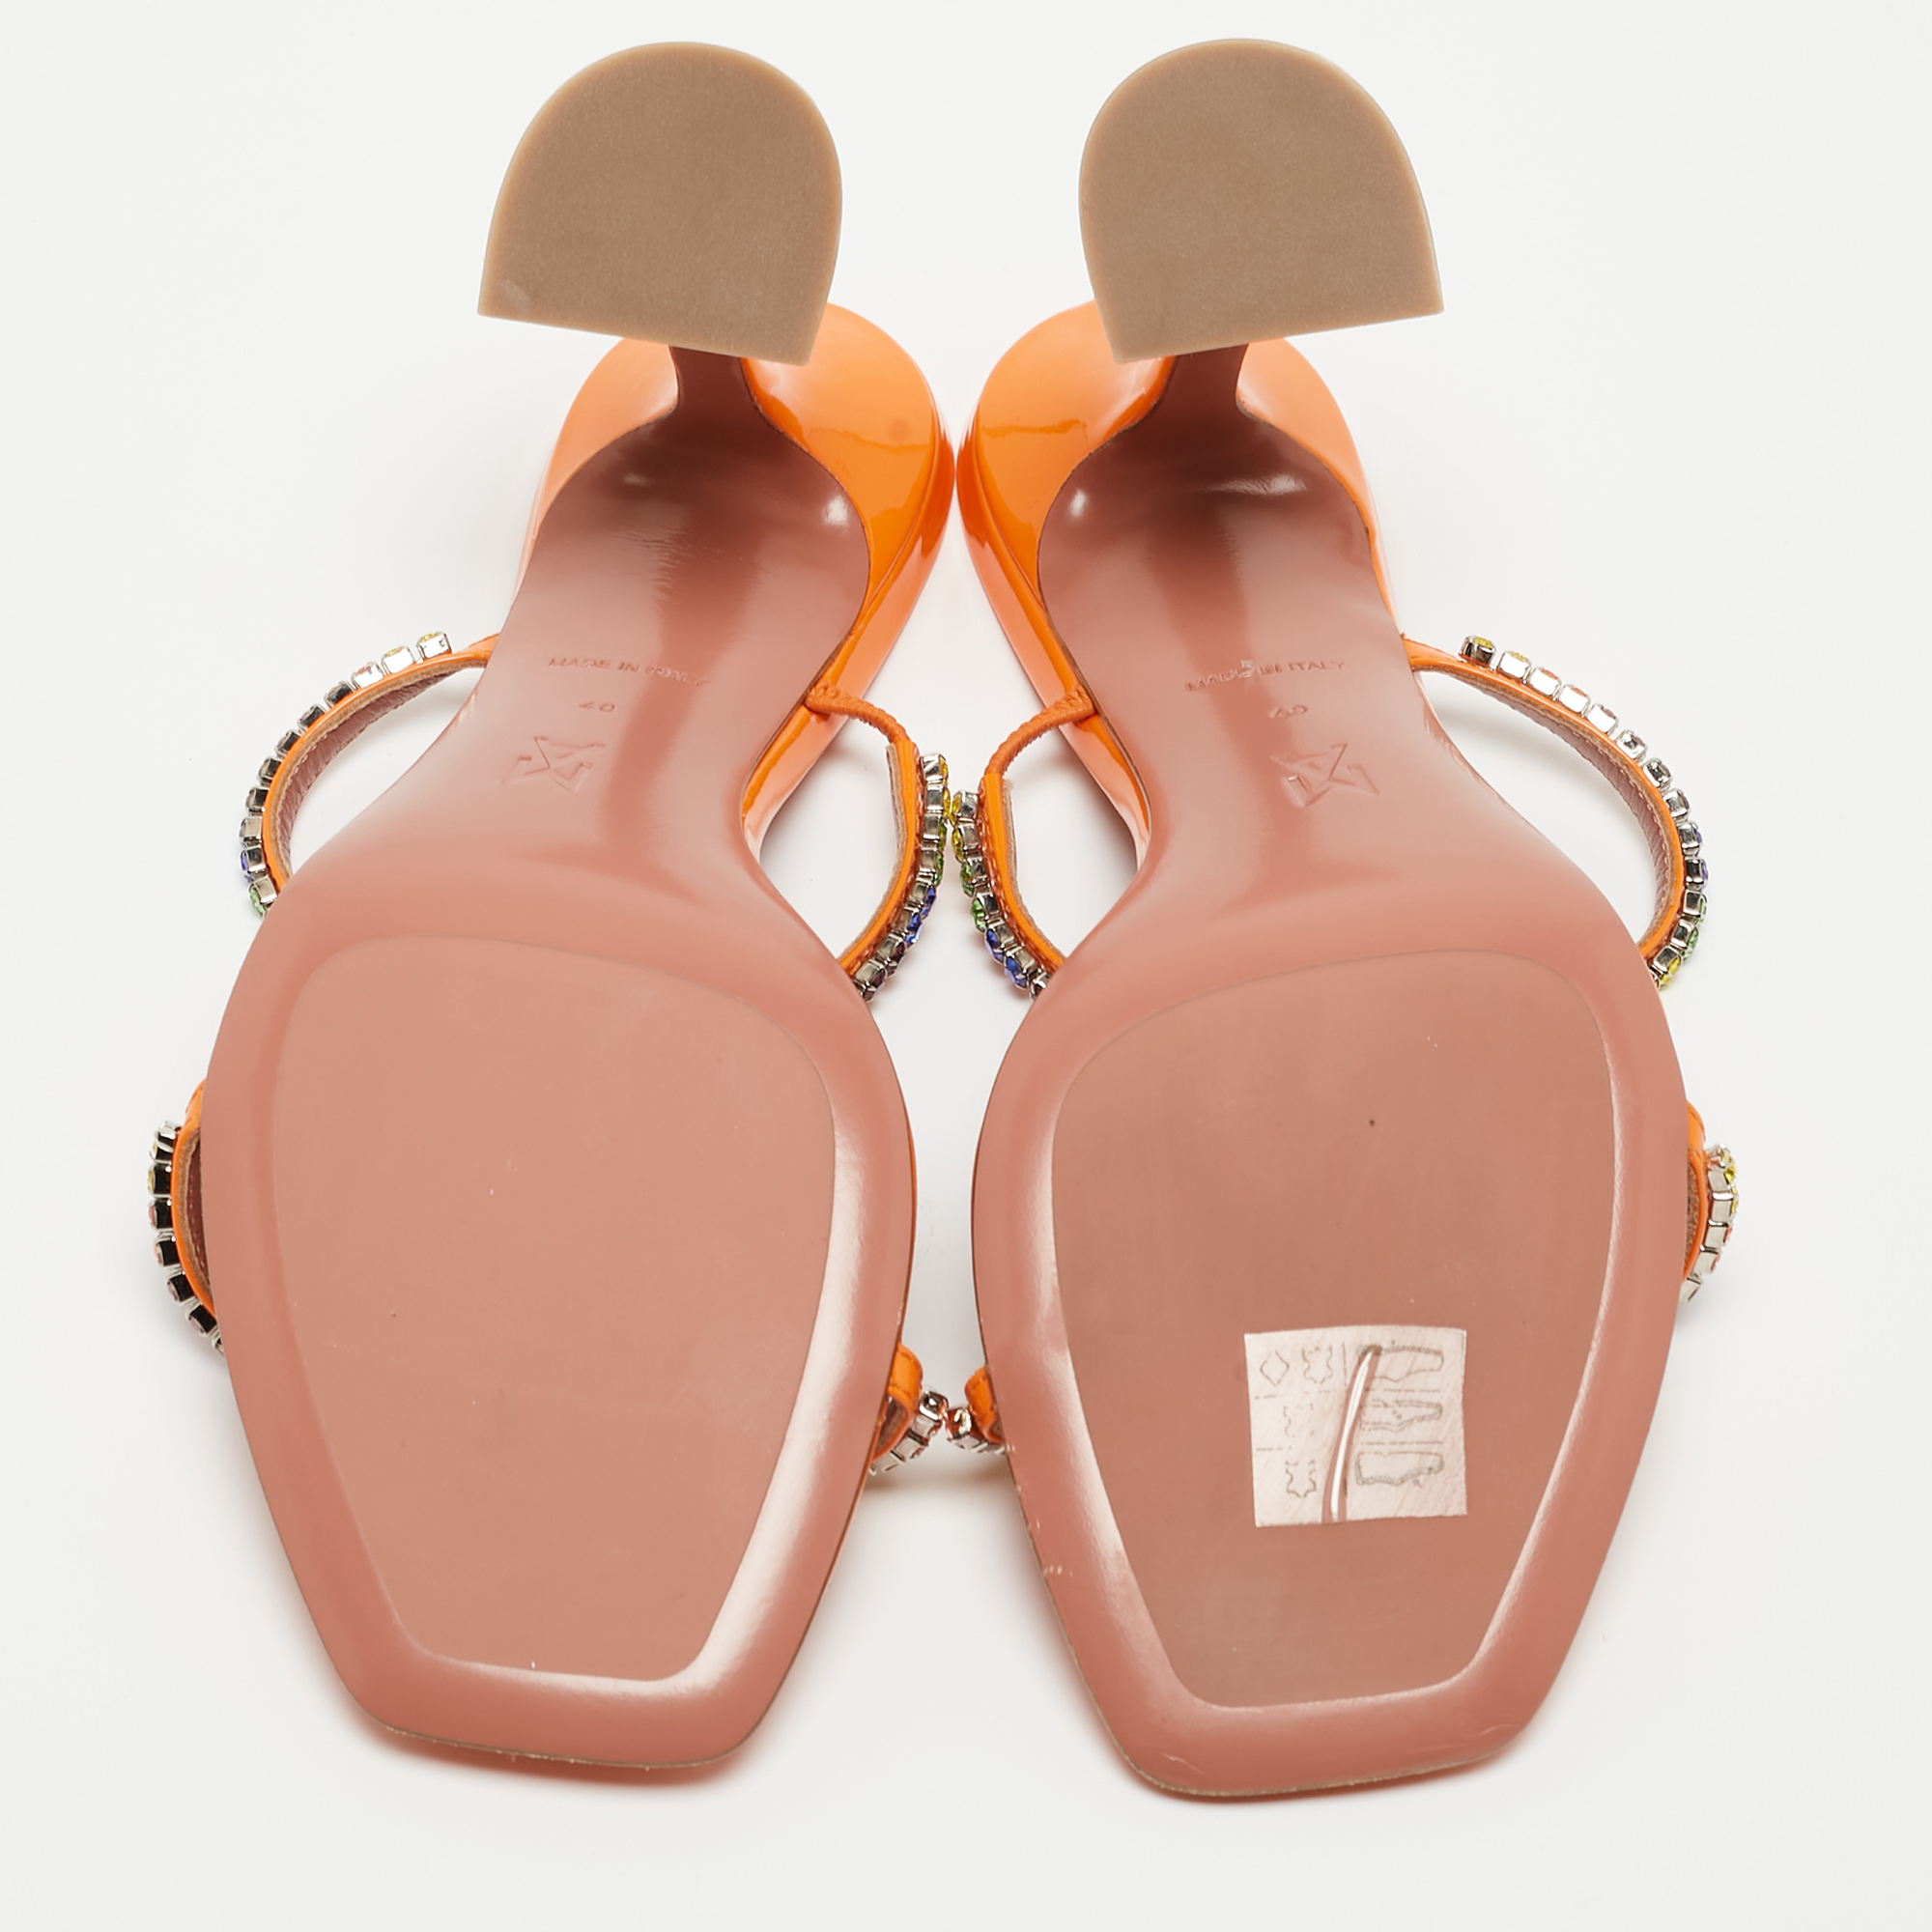 Amina Muaddi Orange Crystal Embellished Satin Glida Slide Sandals Size 40